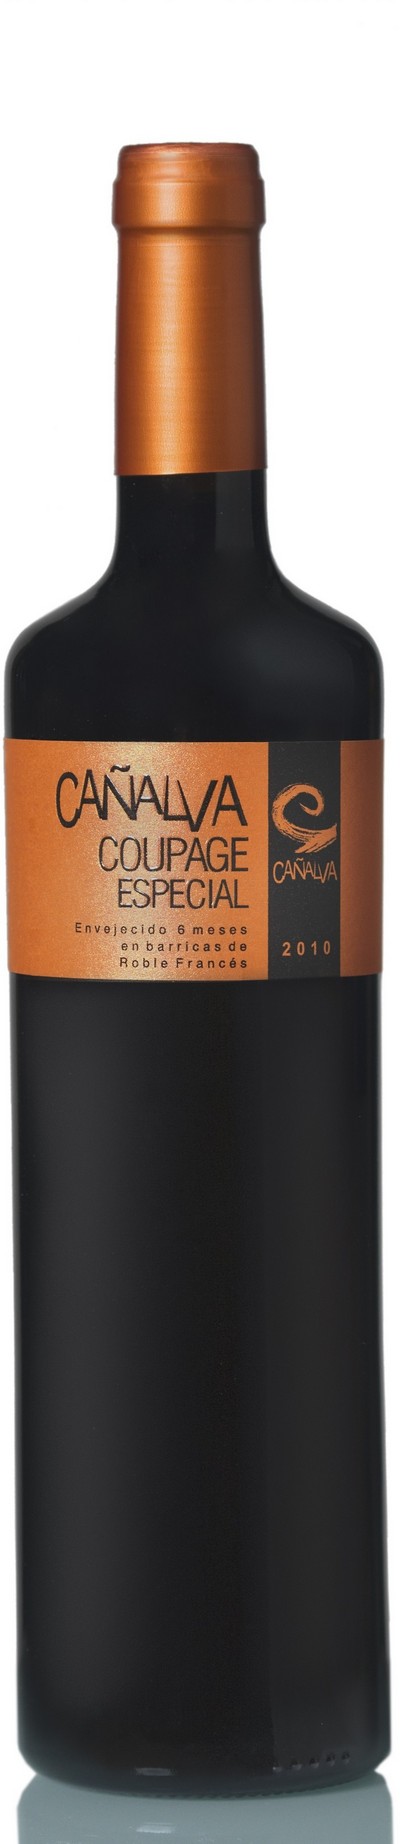 canalva-coupage-especial-2012